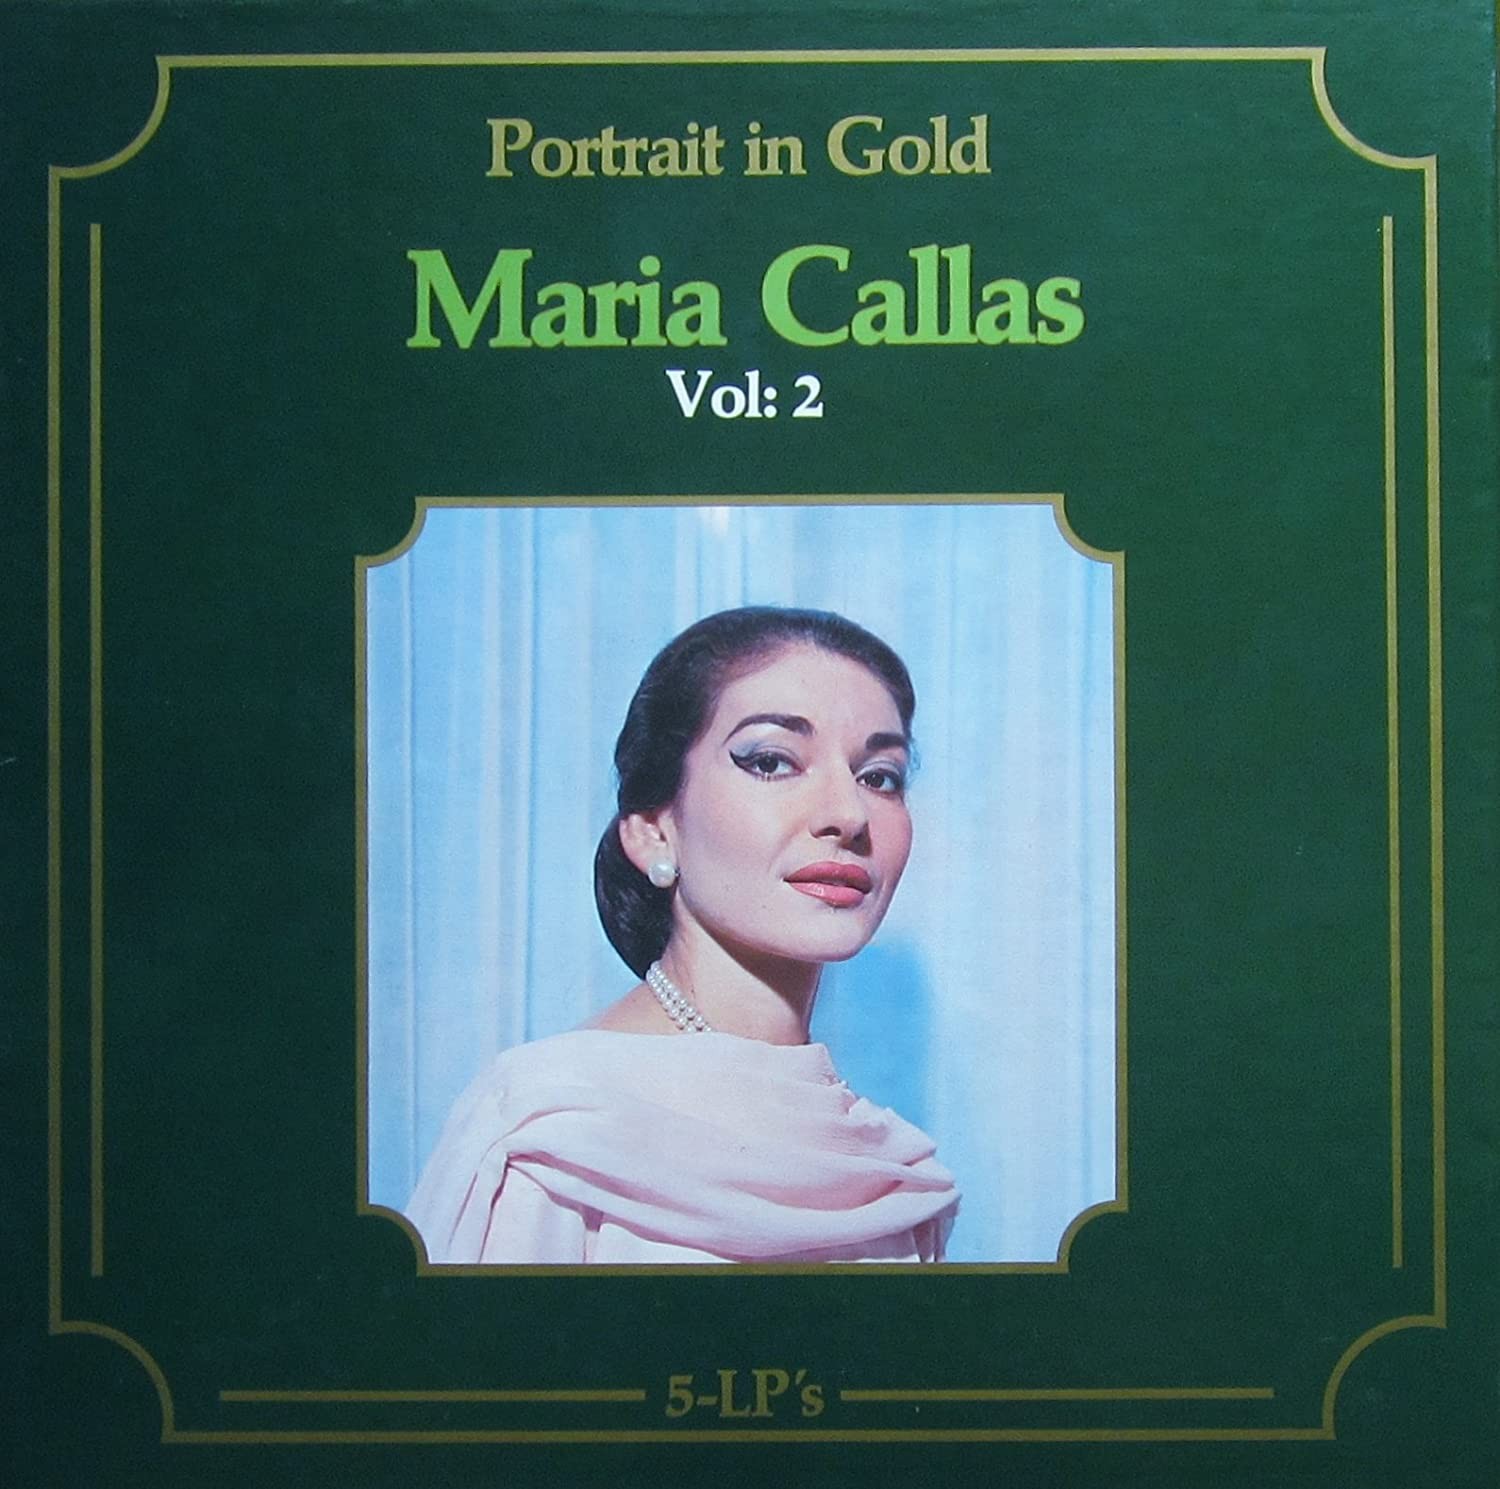 Maria Callas - Portrait In Gold Vol: 2